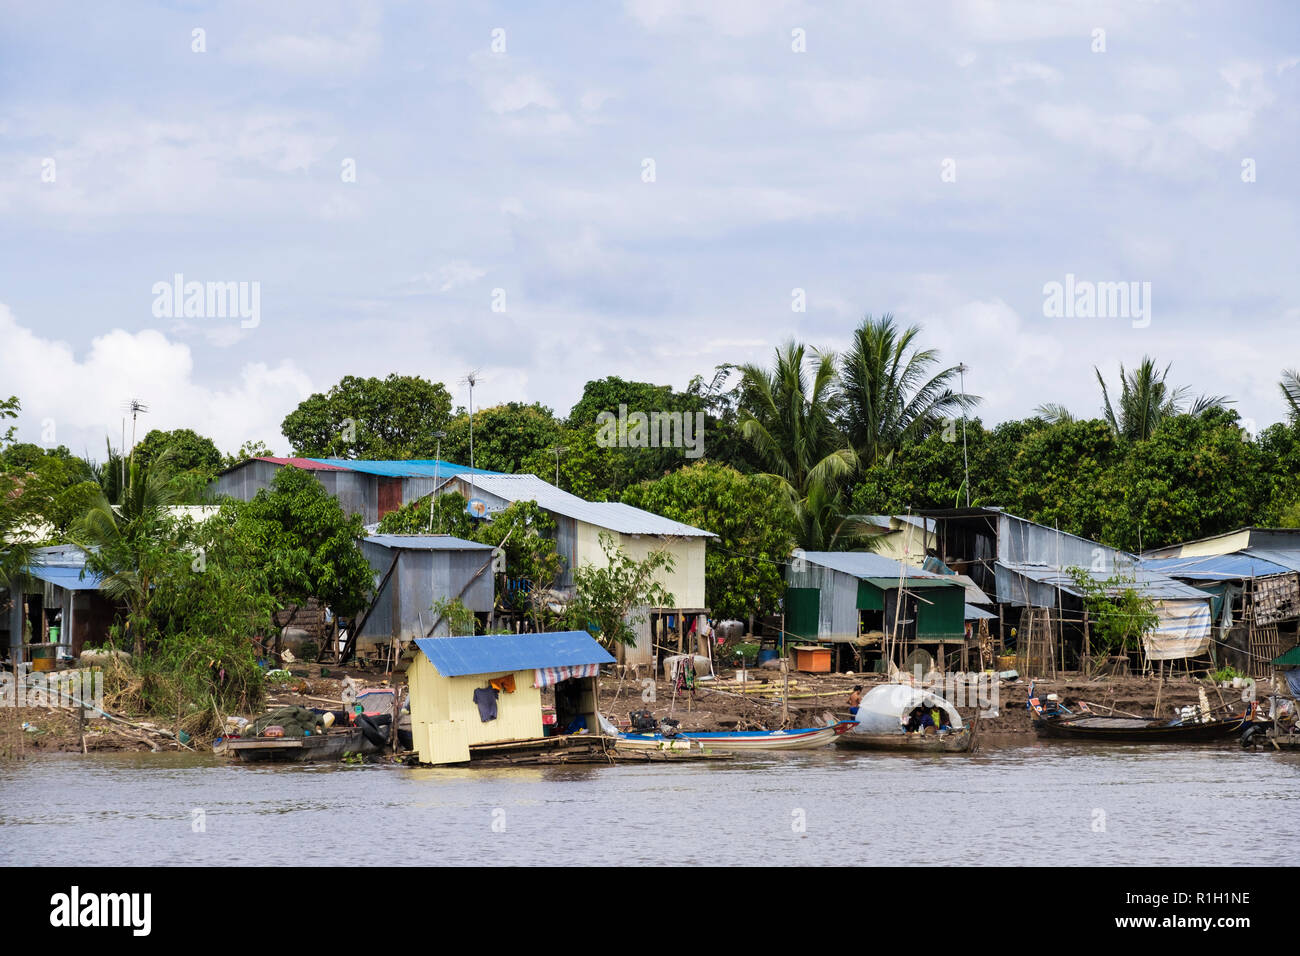 Typische Zinn Häuser Hütten auf Stelzen in Fischerdorf entlang des Mekong River. Kambodscha, Südostasien Stockfoto